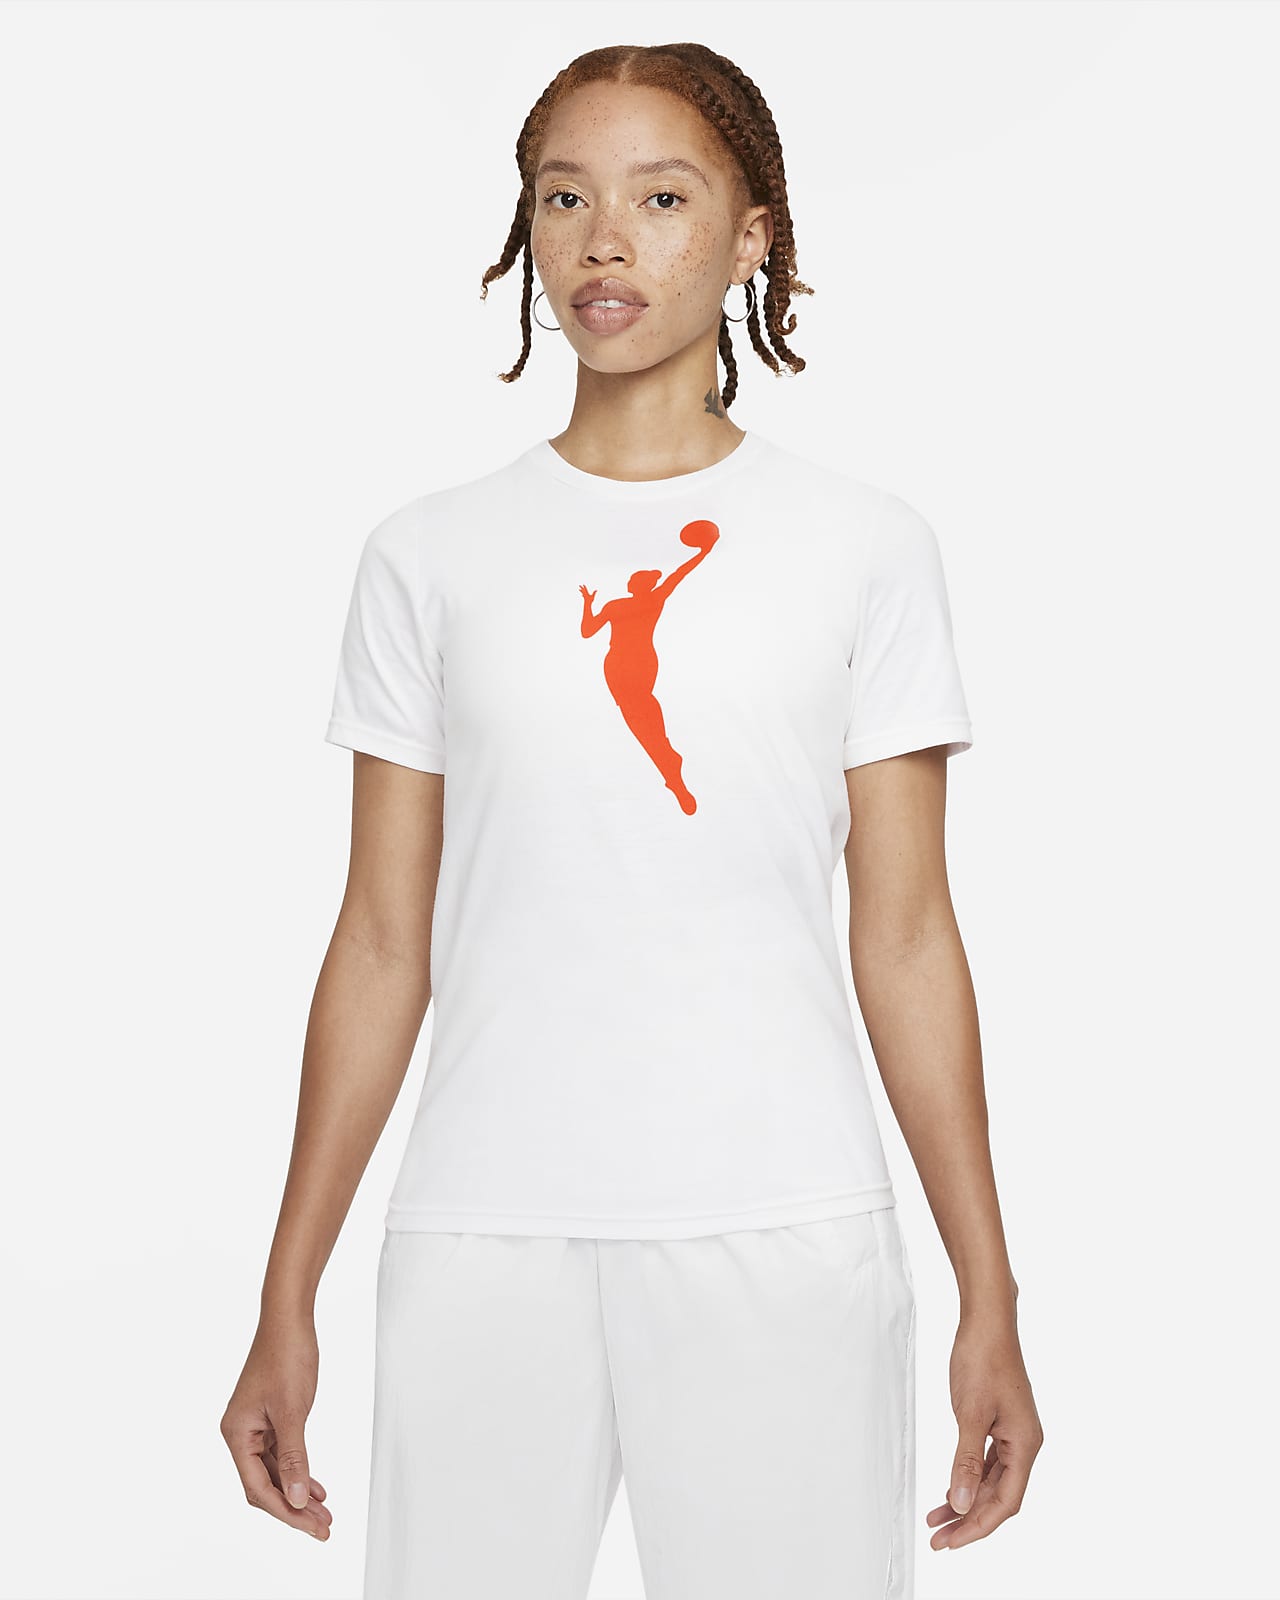 Team 13 Nike WNBA-shirt voor kids